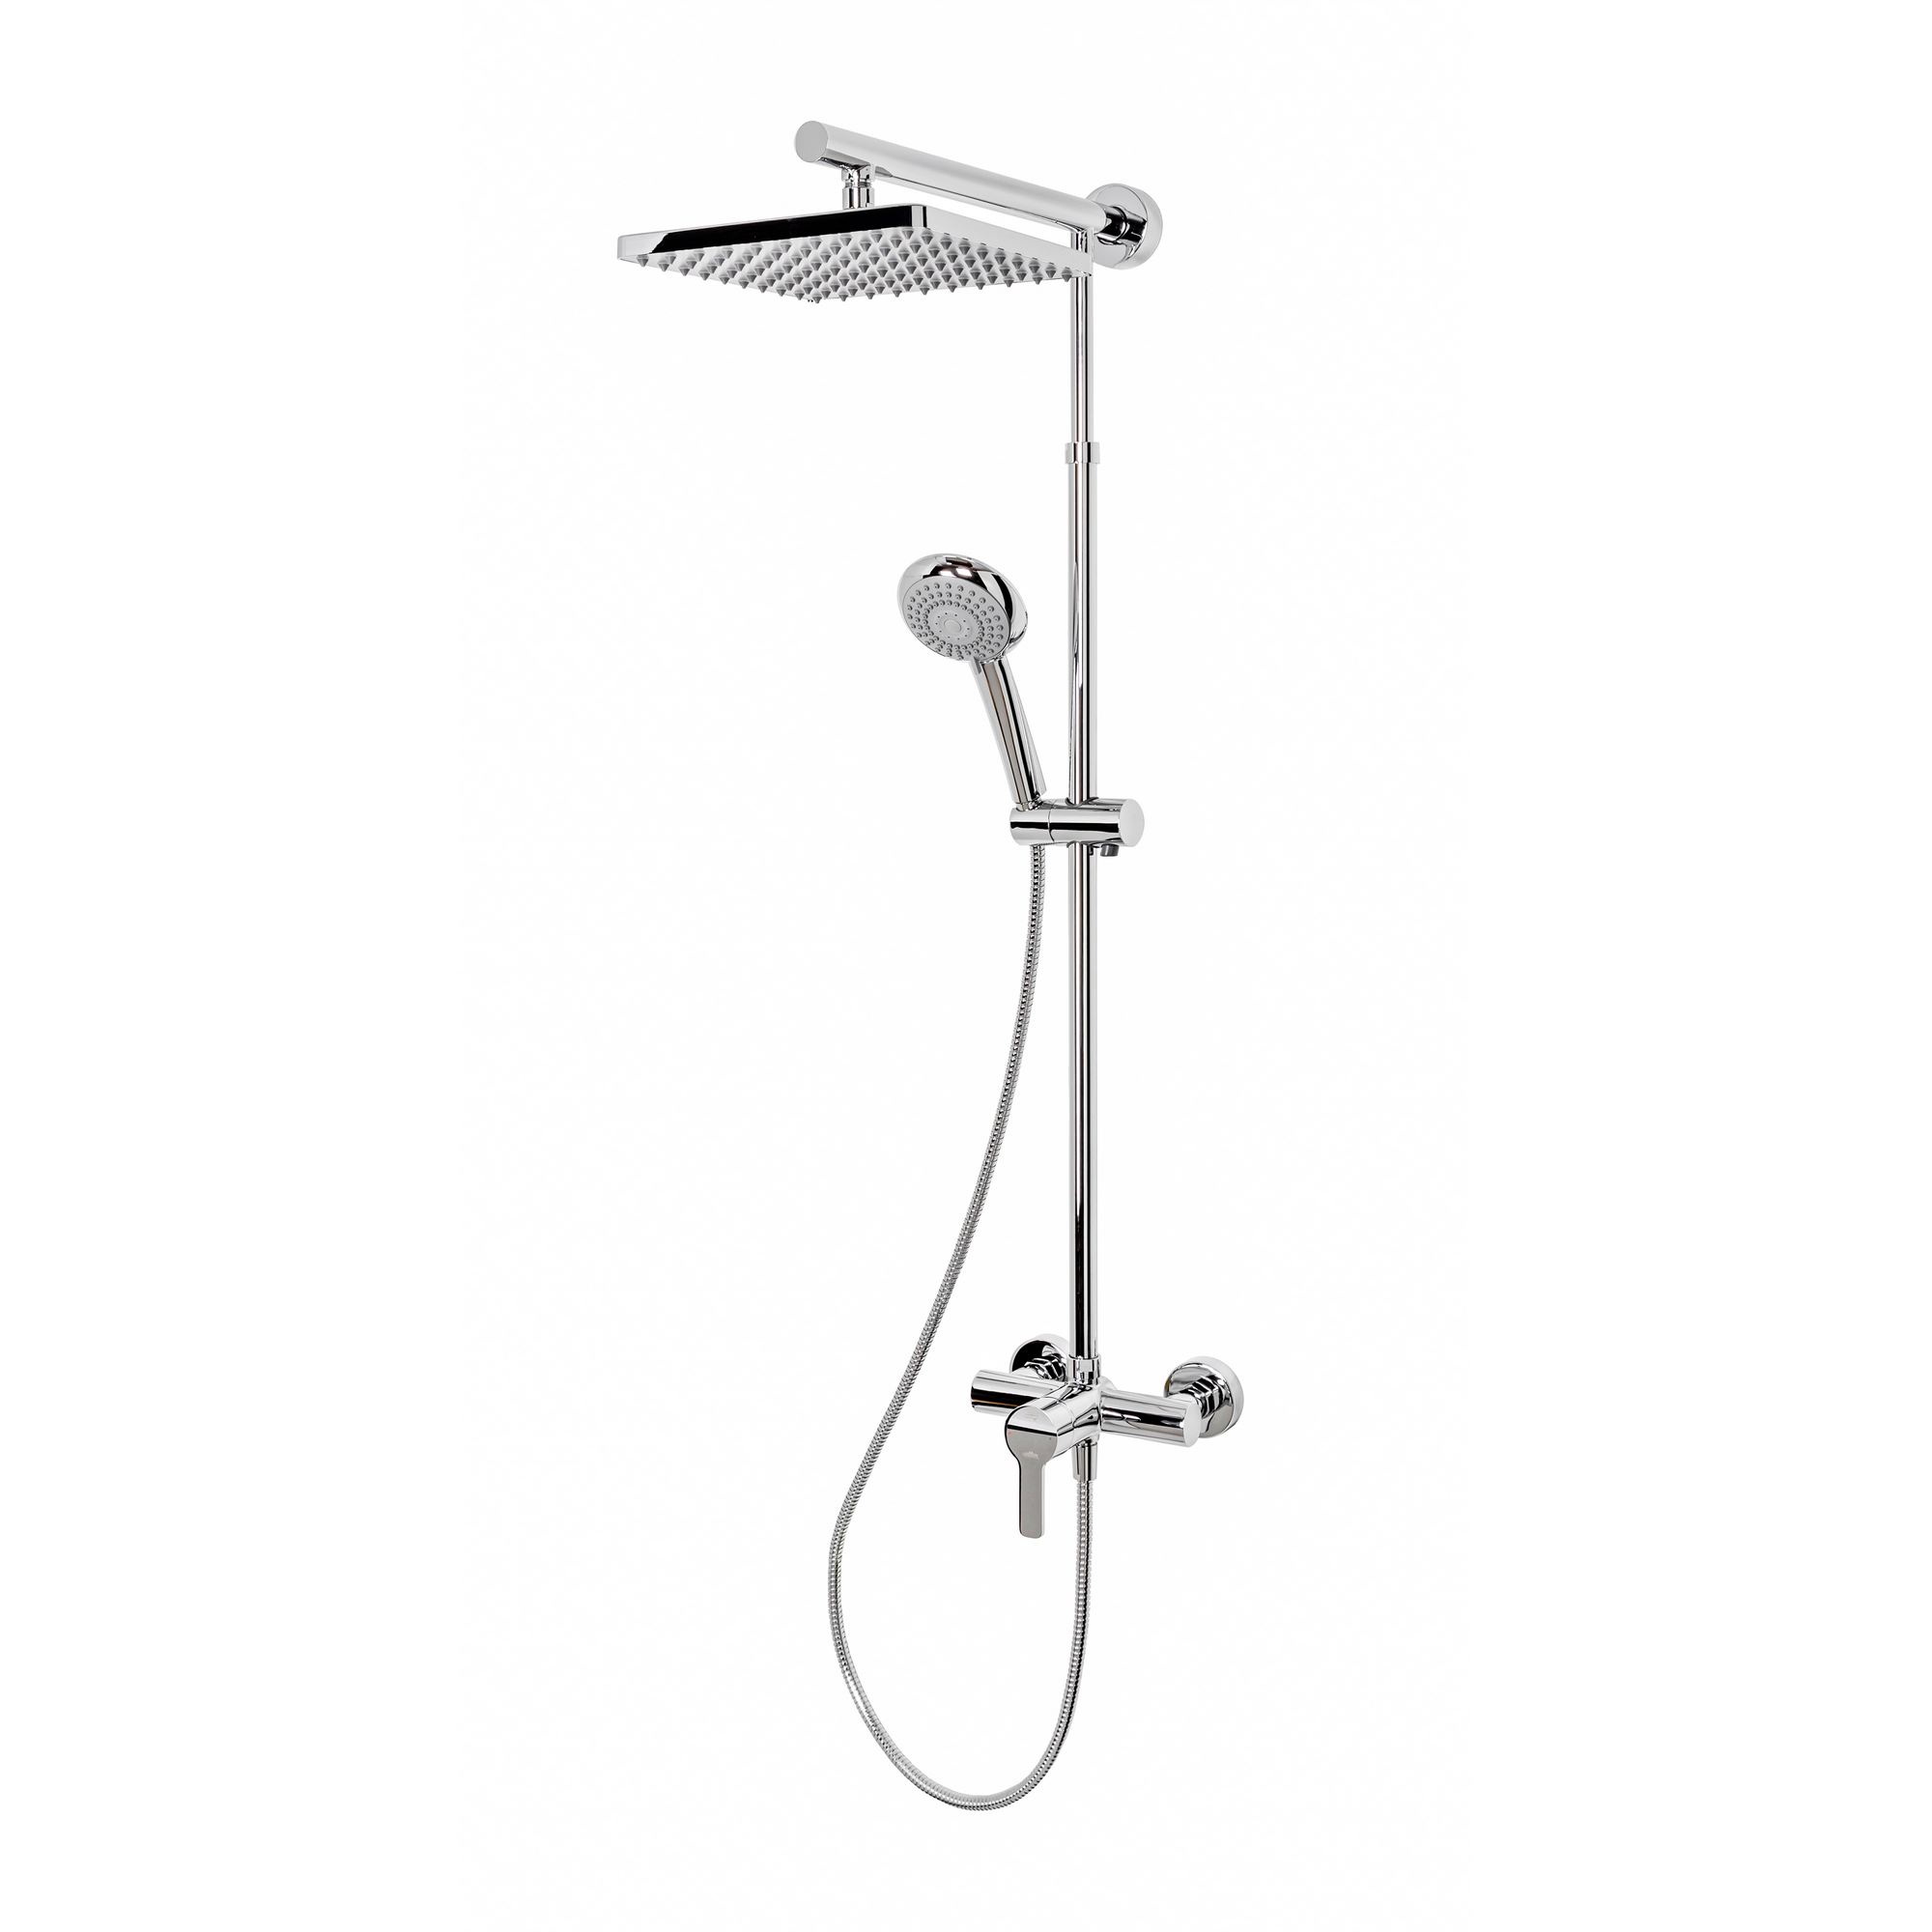 Duschsystem 'Rain Classic Plus' mit Einhebelmischer, eckig, 155 cm + product picture